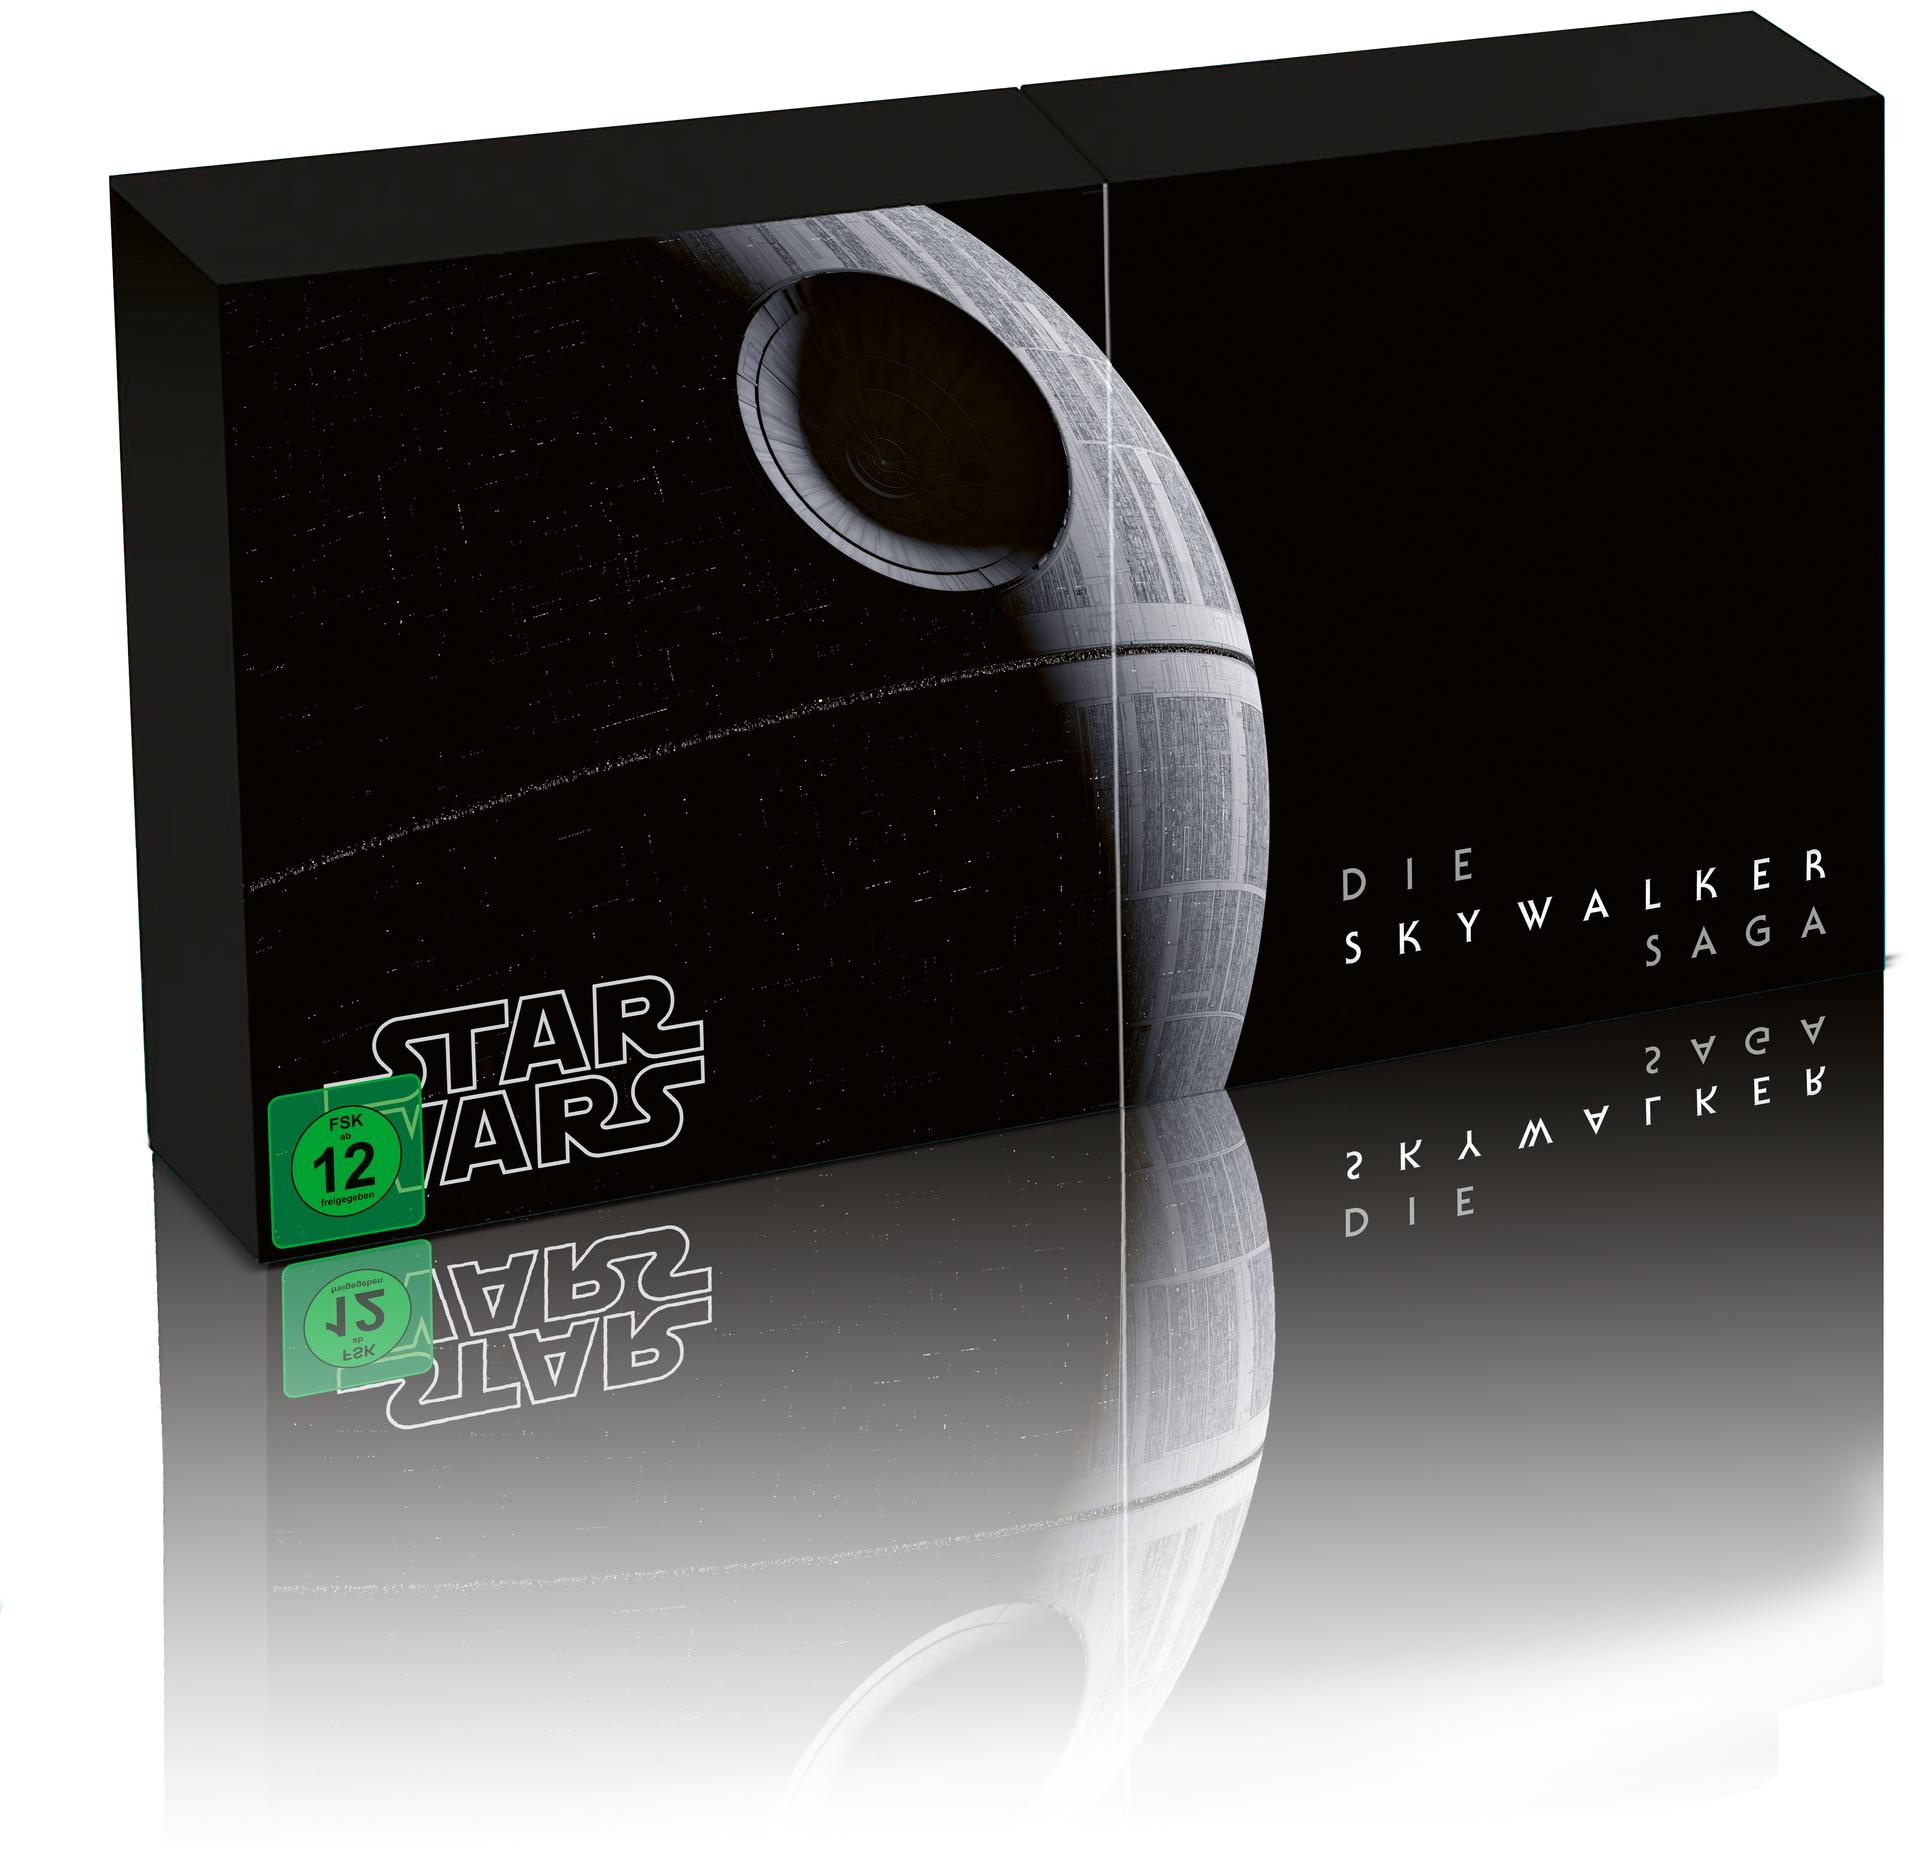 Star Wars Episode HD Blu-ray Die Ultra 4K 1-9 Saga Skywalker 